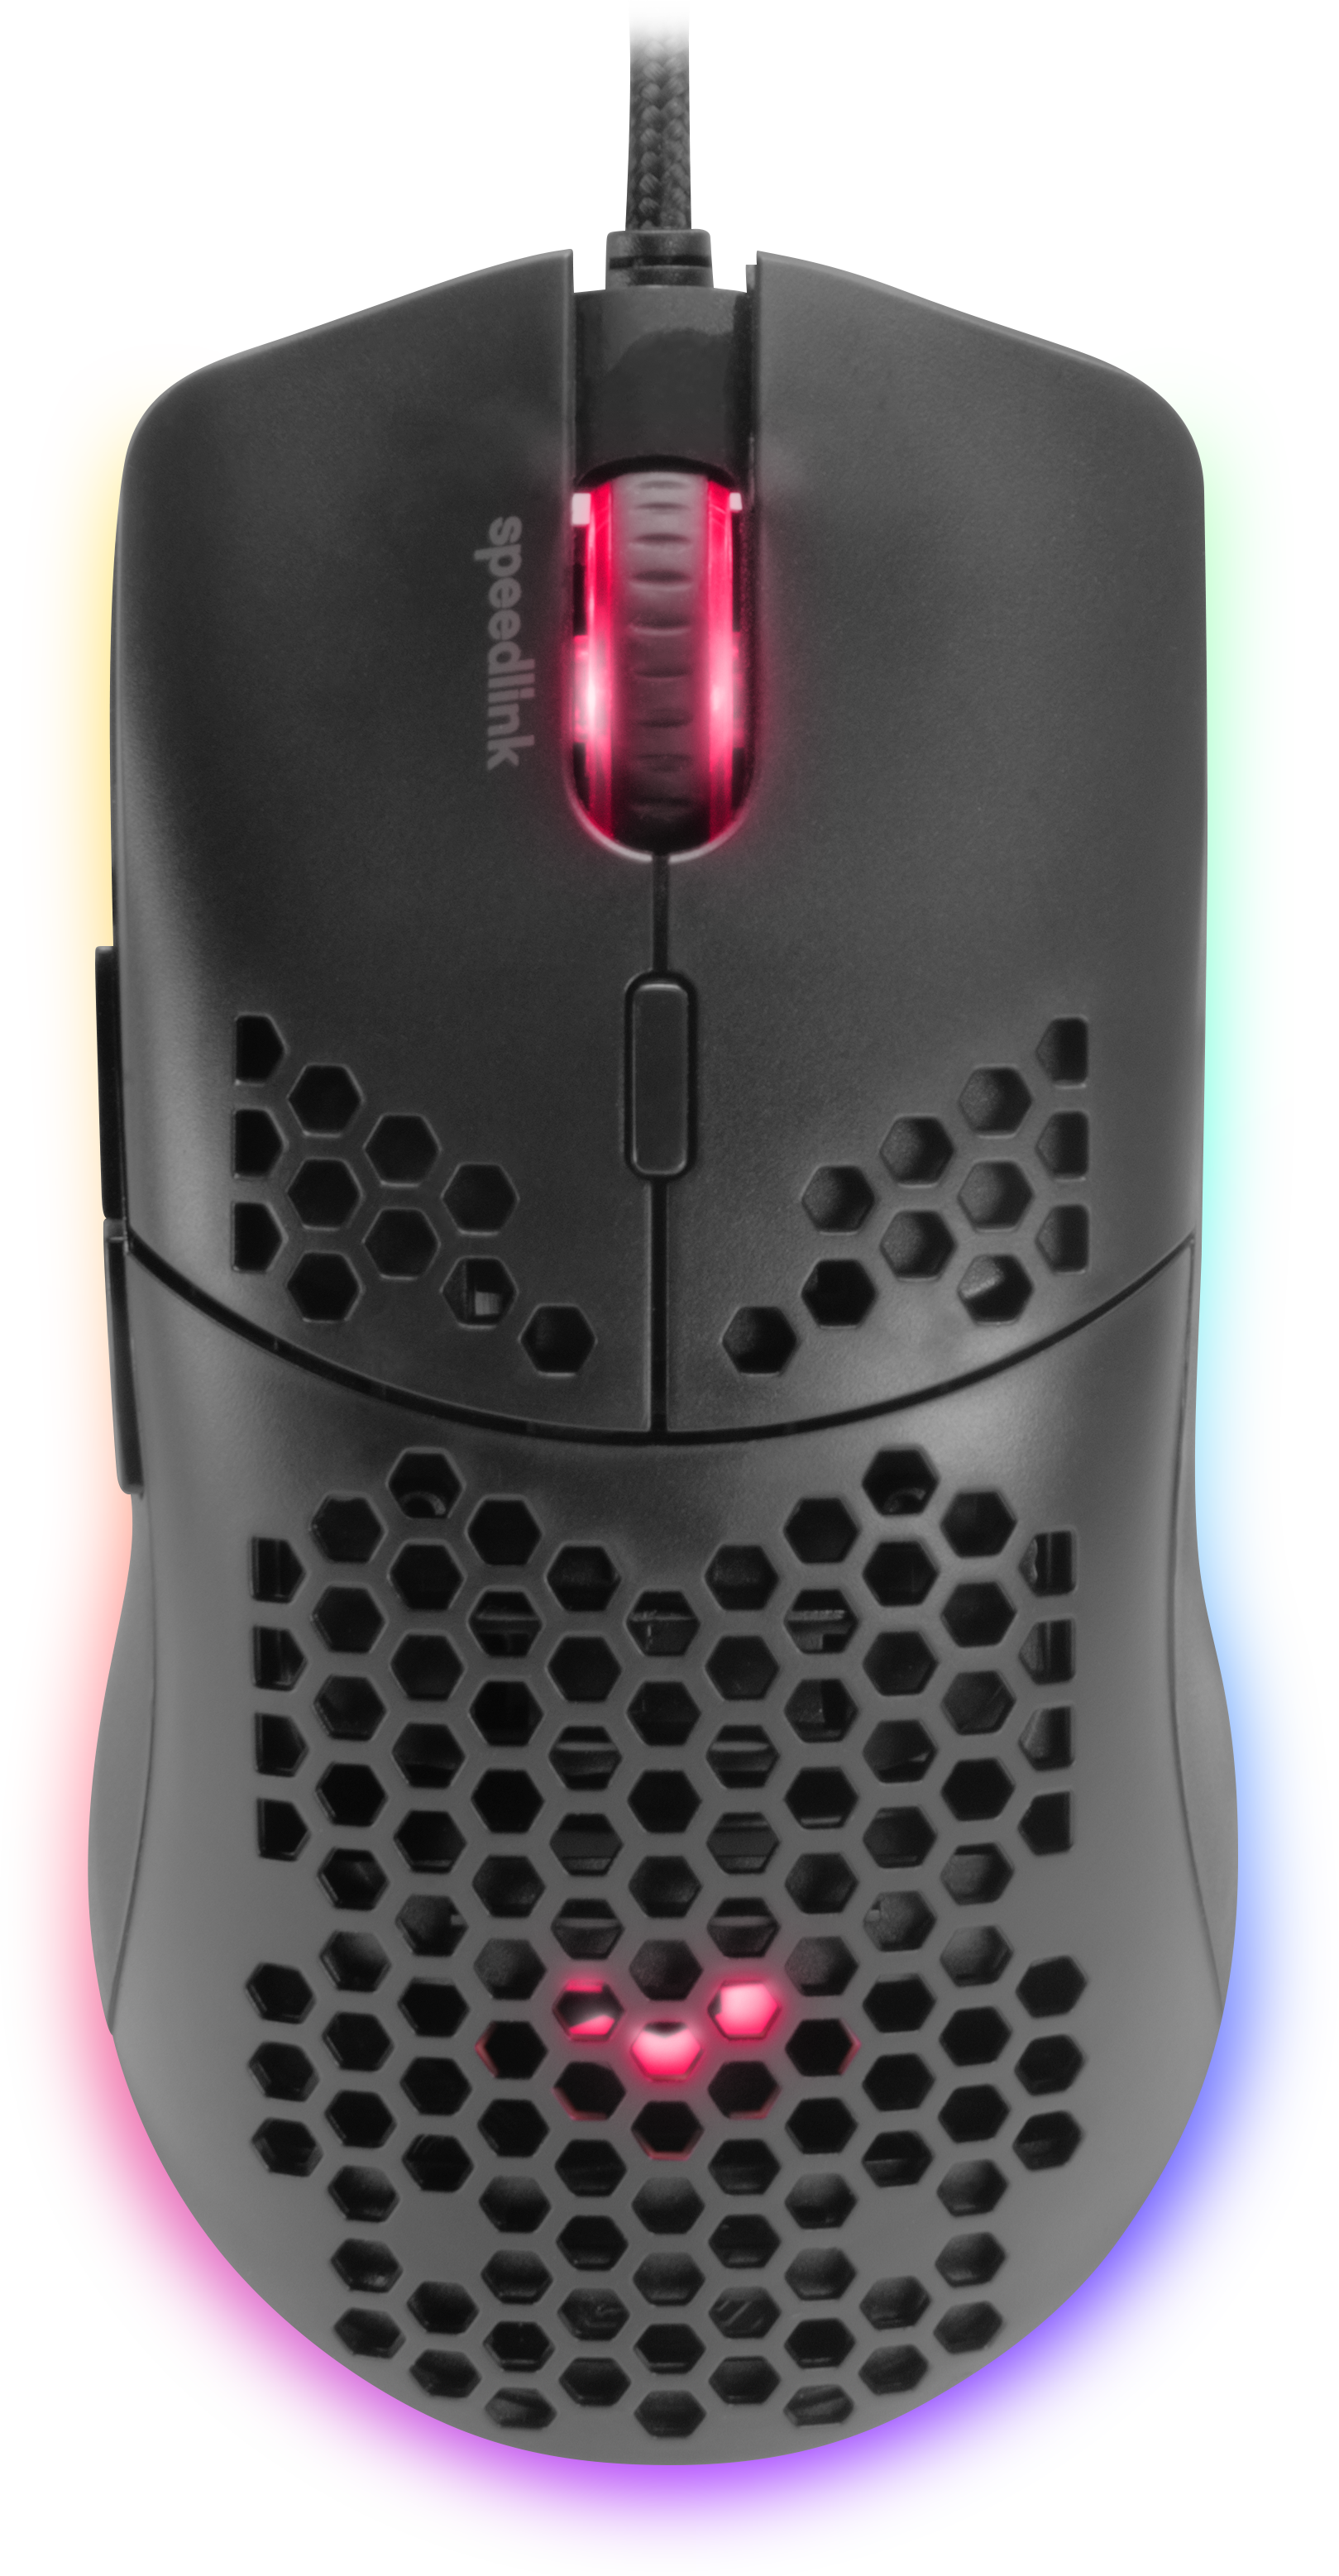 SKELL Leichtgewichtige RGB Gaming Maus, schwarz